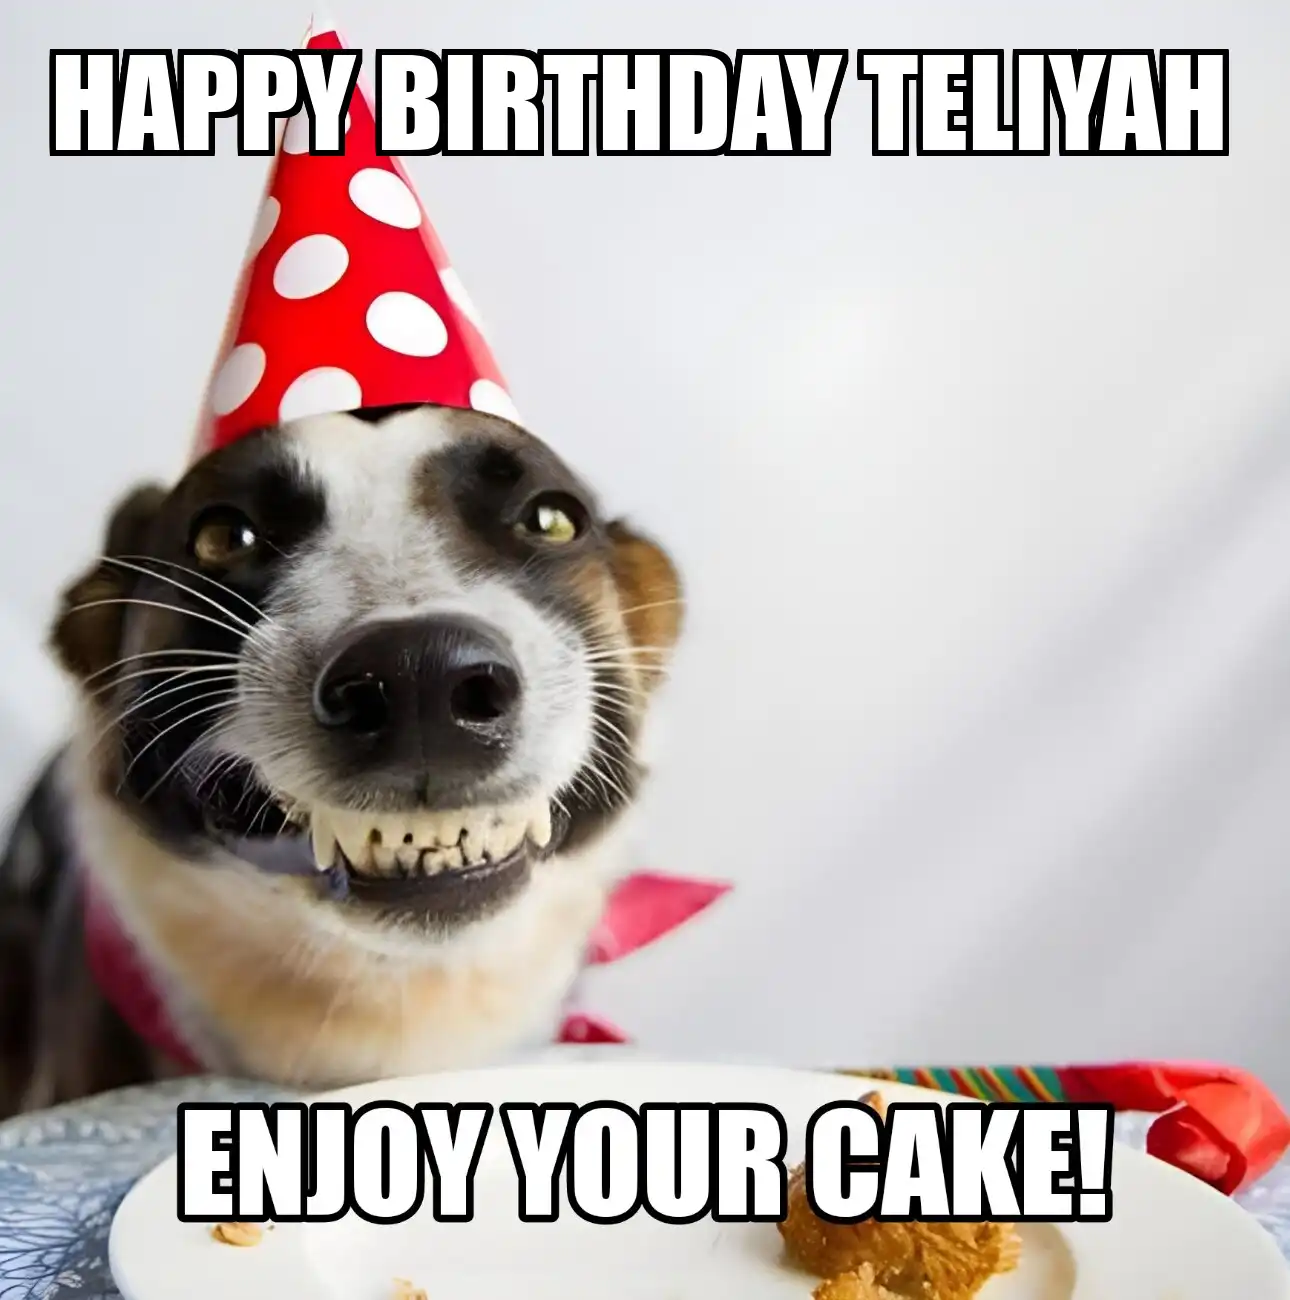 Happy Birthday Teliyah Enjoy Your Cake Dog Meme